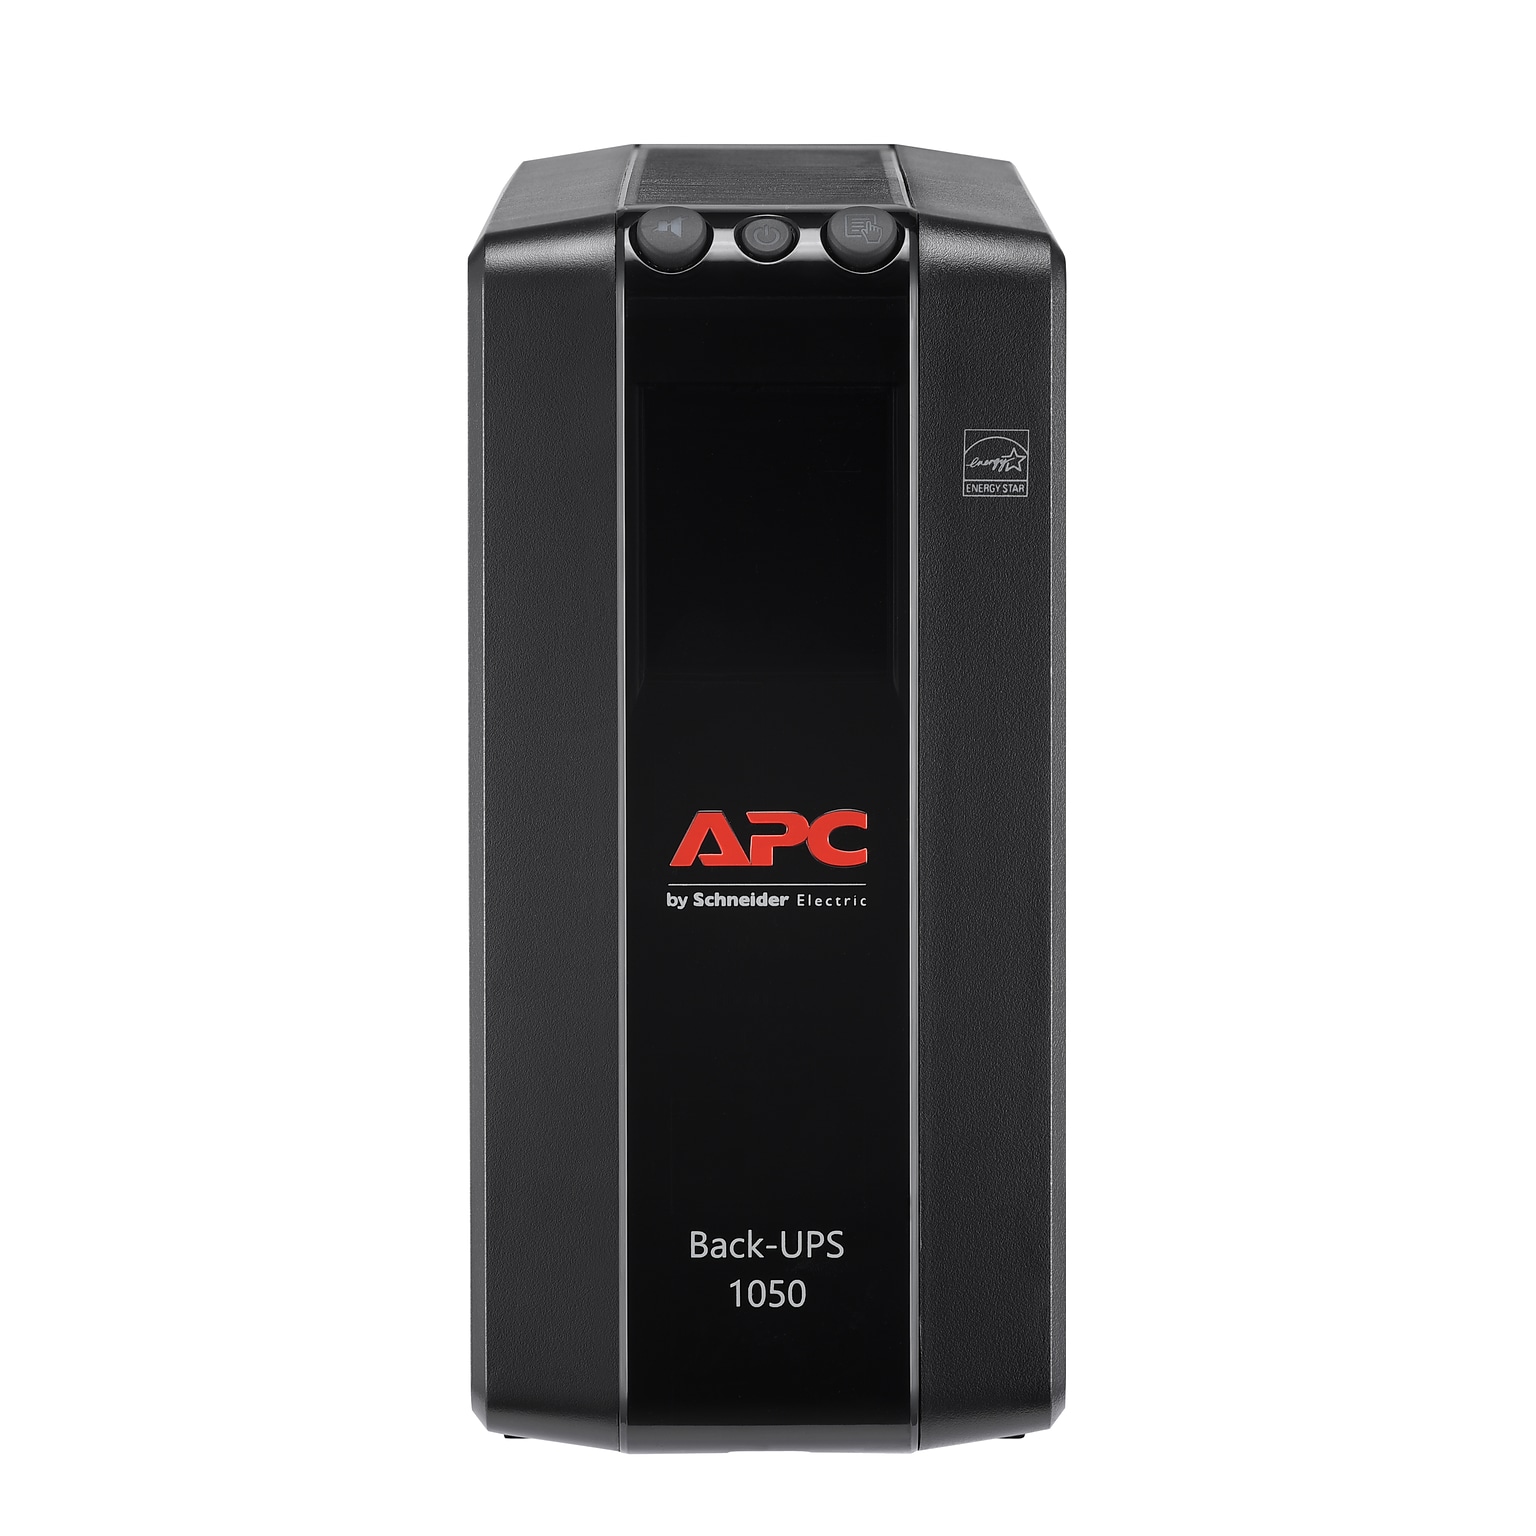 APC Back-UPS Pro 1000 VA Battery Backup, 8-Outlets, Black (BX1000M-LM60)